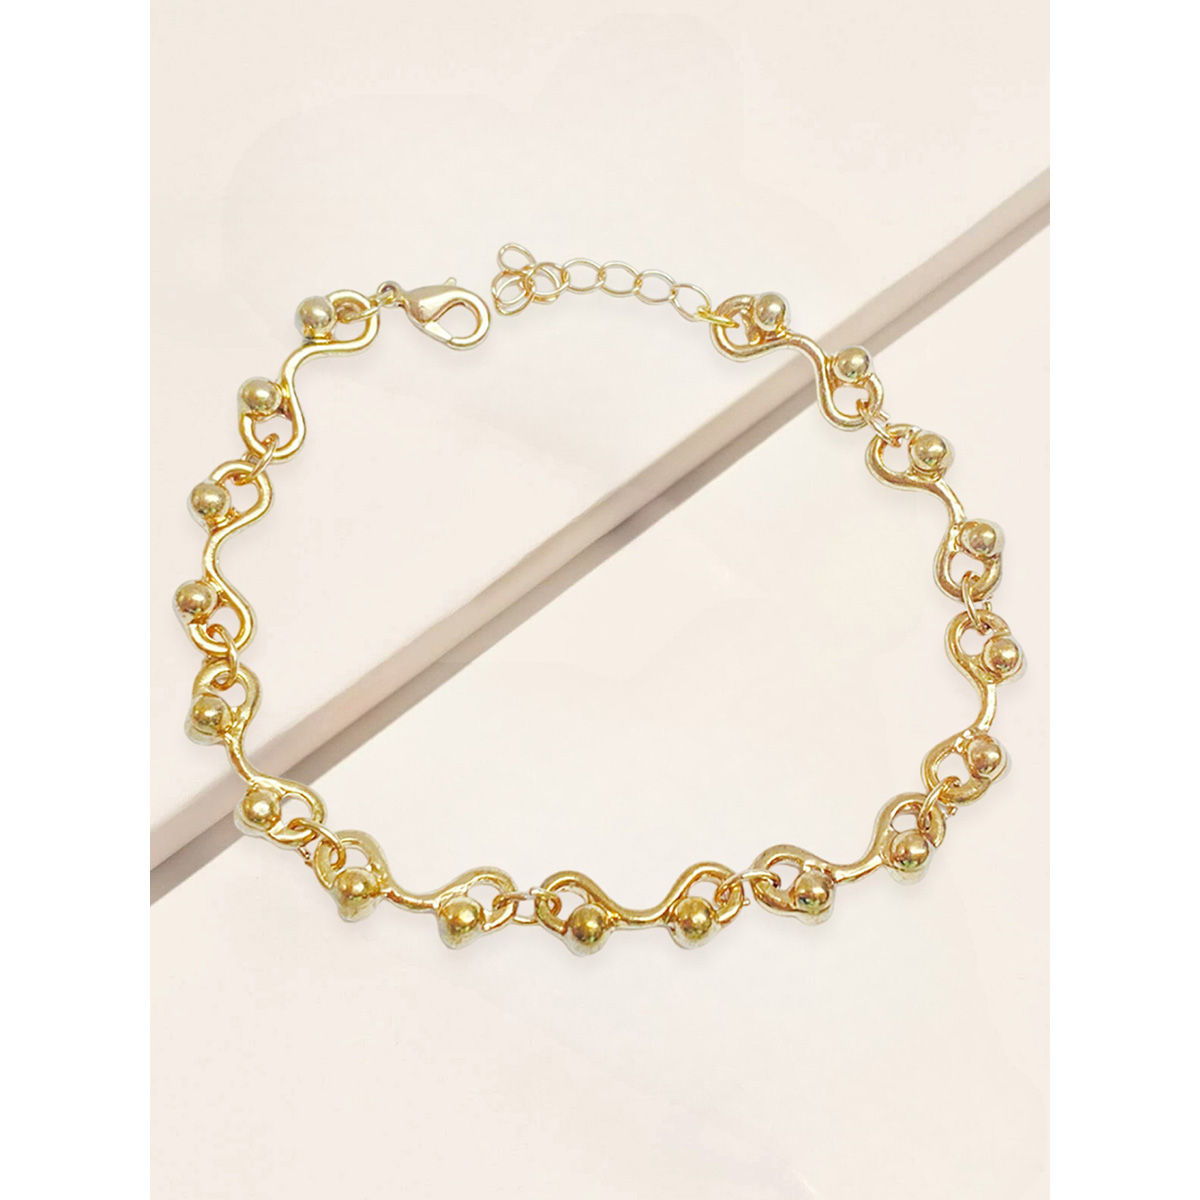 Share 82+ chain bracelet girl best